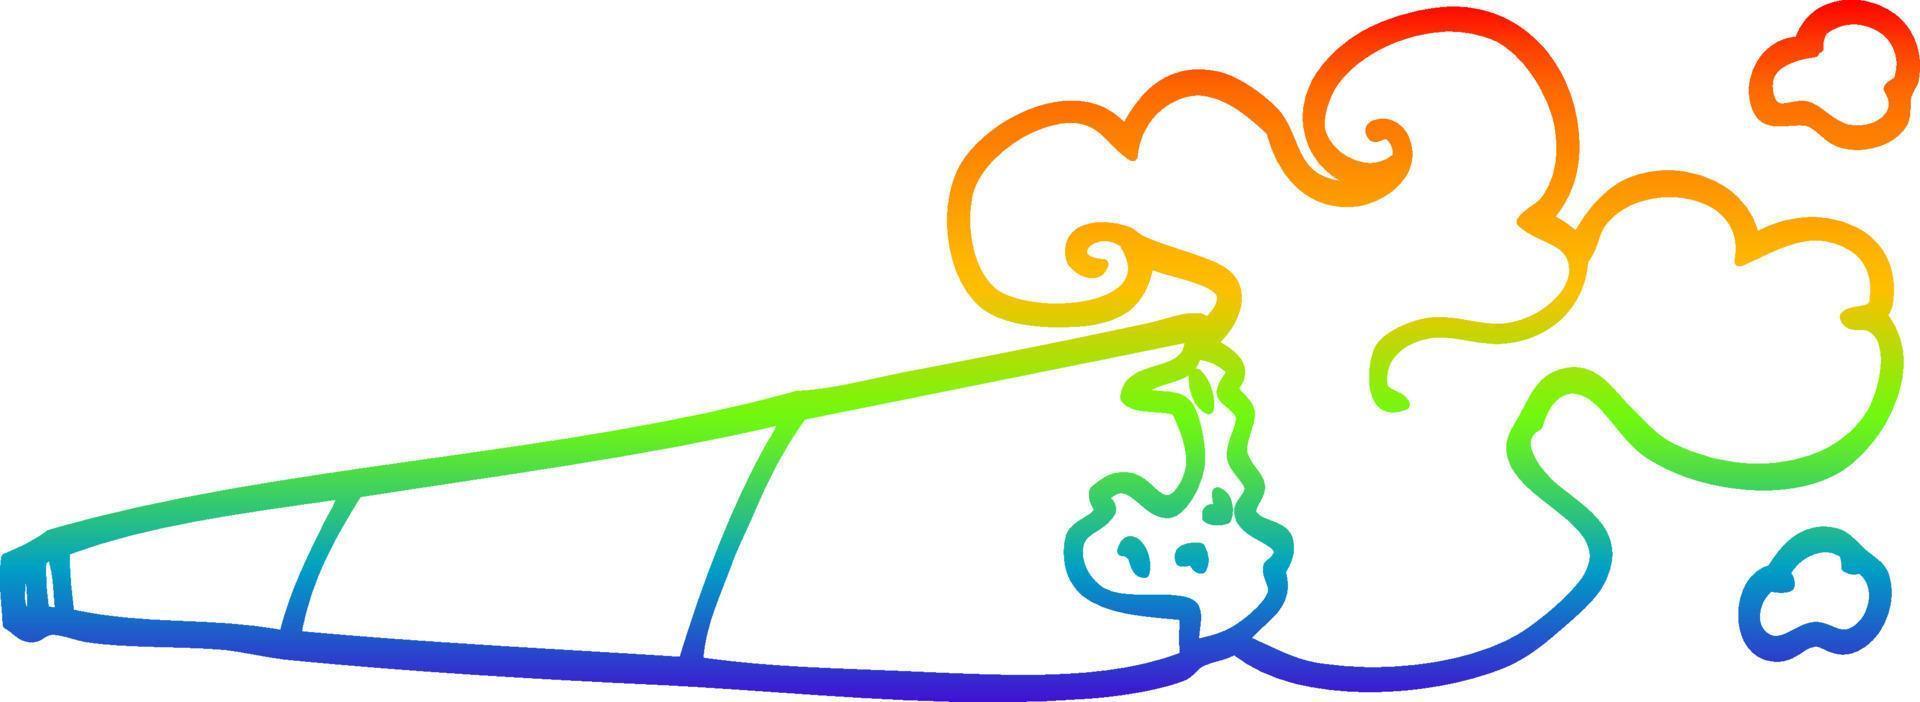 Regenbogen-Gradientenlinie Zeichnung Cartoon gerollte Zigarette vektor